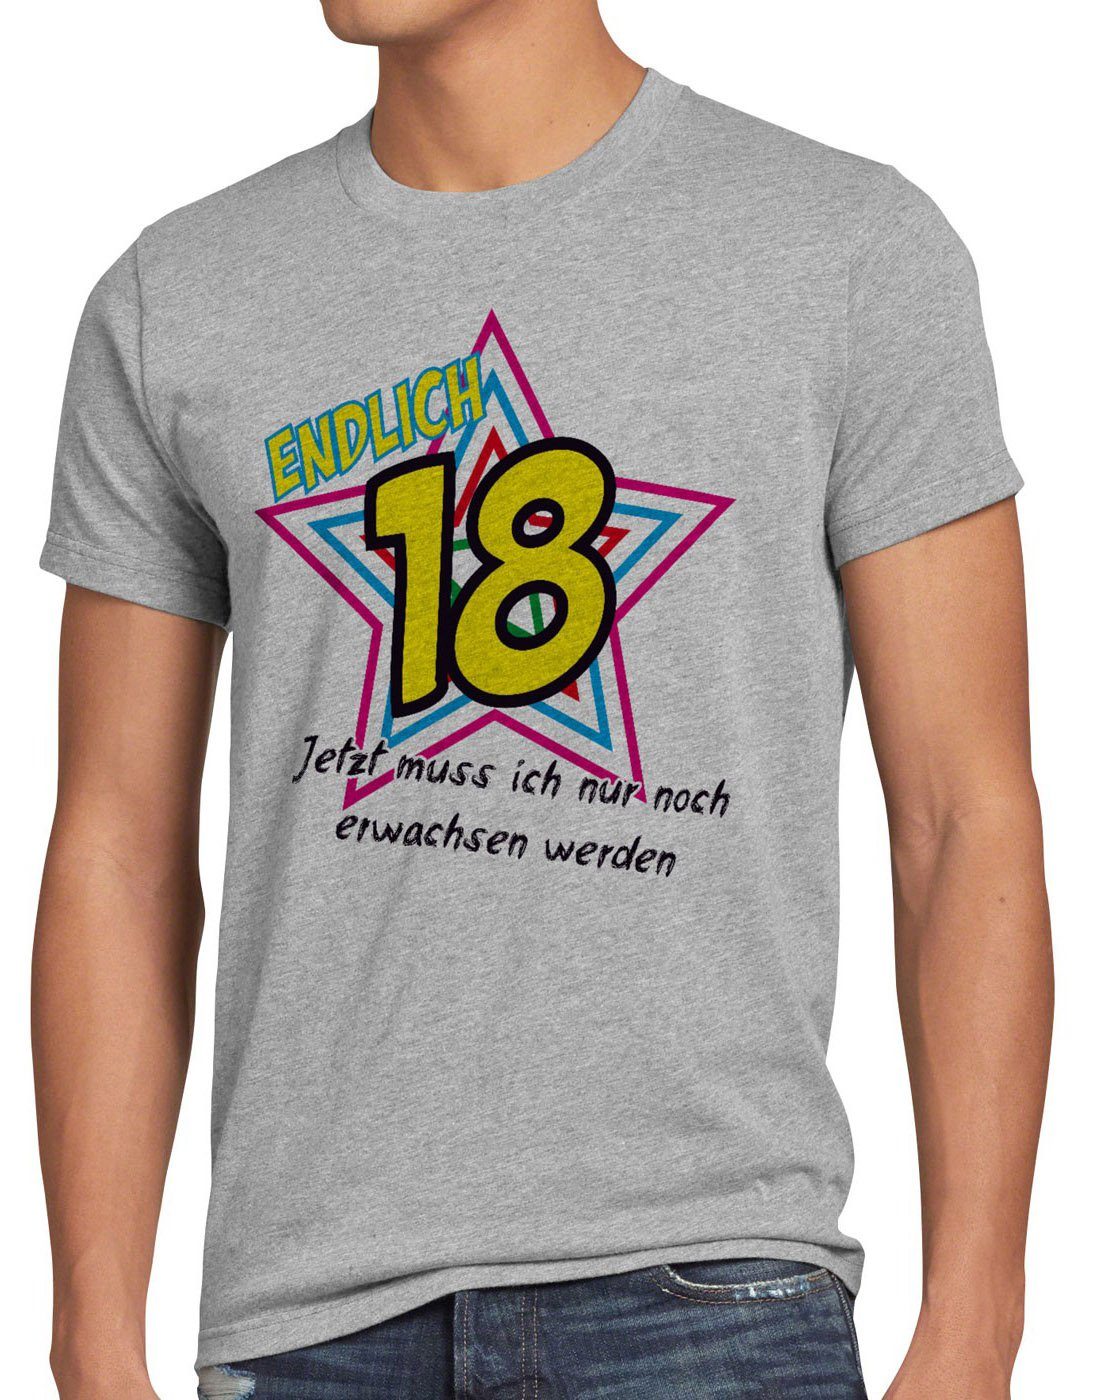 style3 Print-Shirt Herren T-Shirt Endlich 18 Jetzt noch erwachsen werden! Geburtstag Fun Funshirt grau meliert